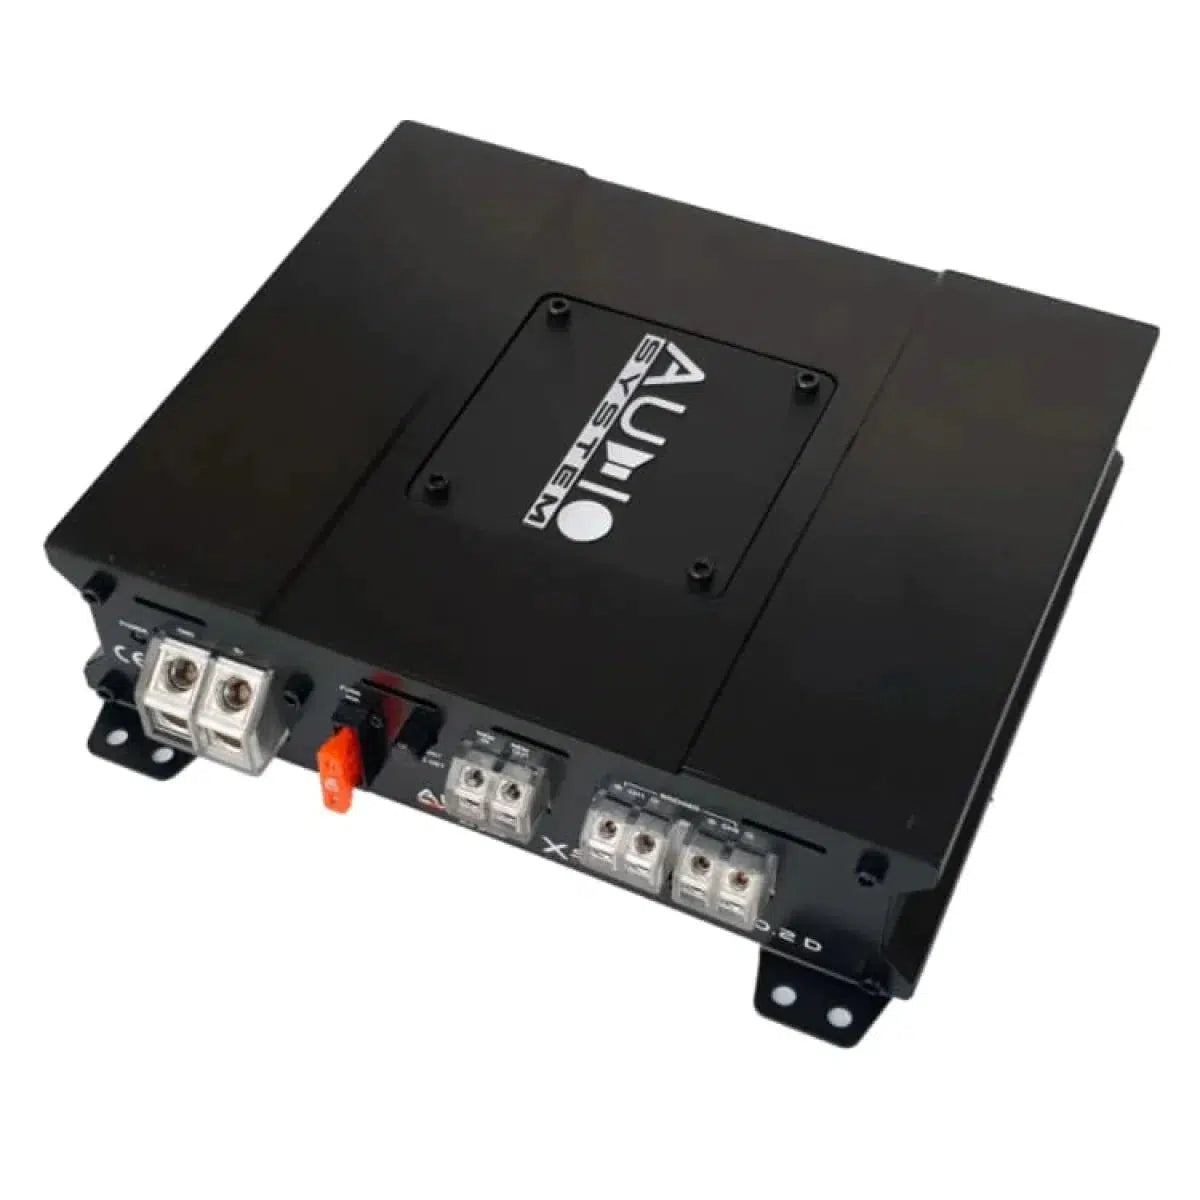 Audio System-X-150.2 D-2-Channel Amplifier-Masori.de